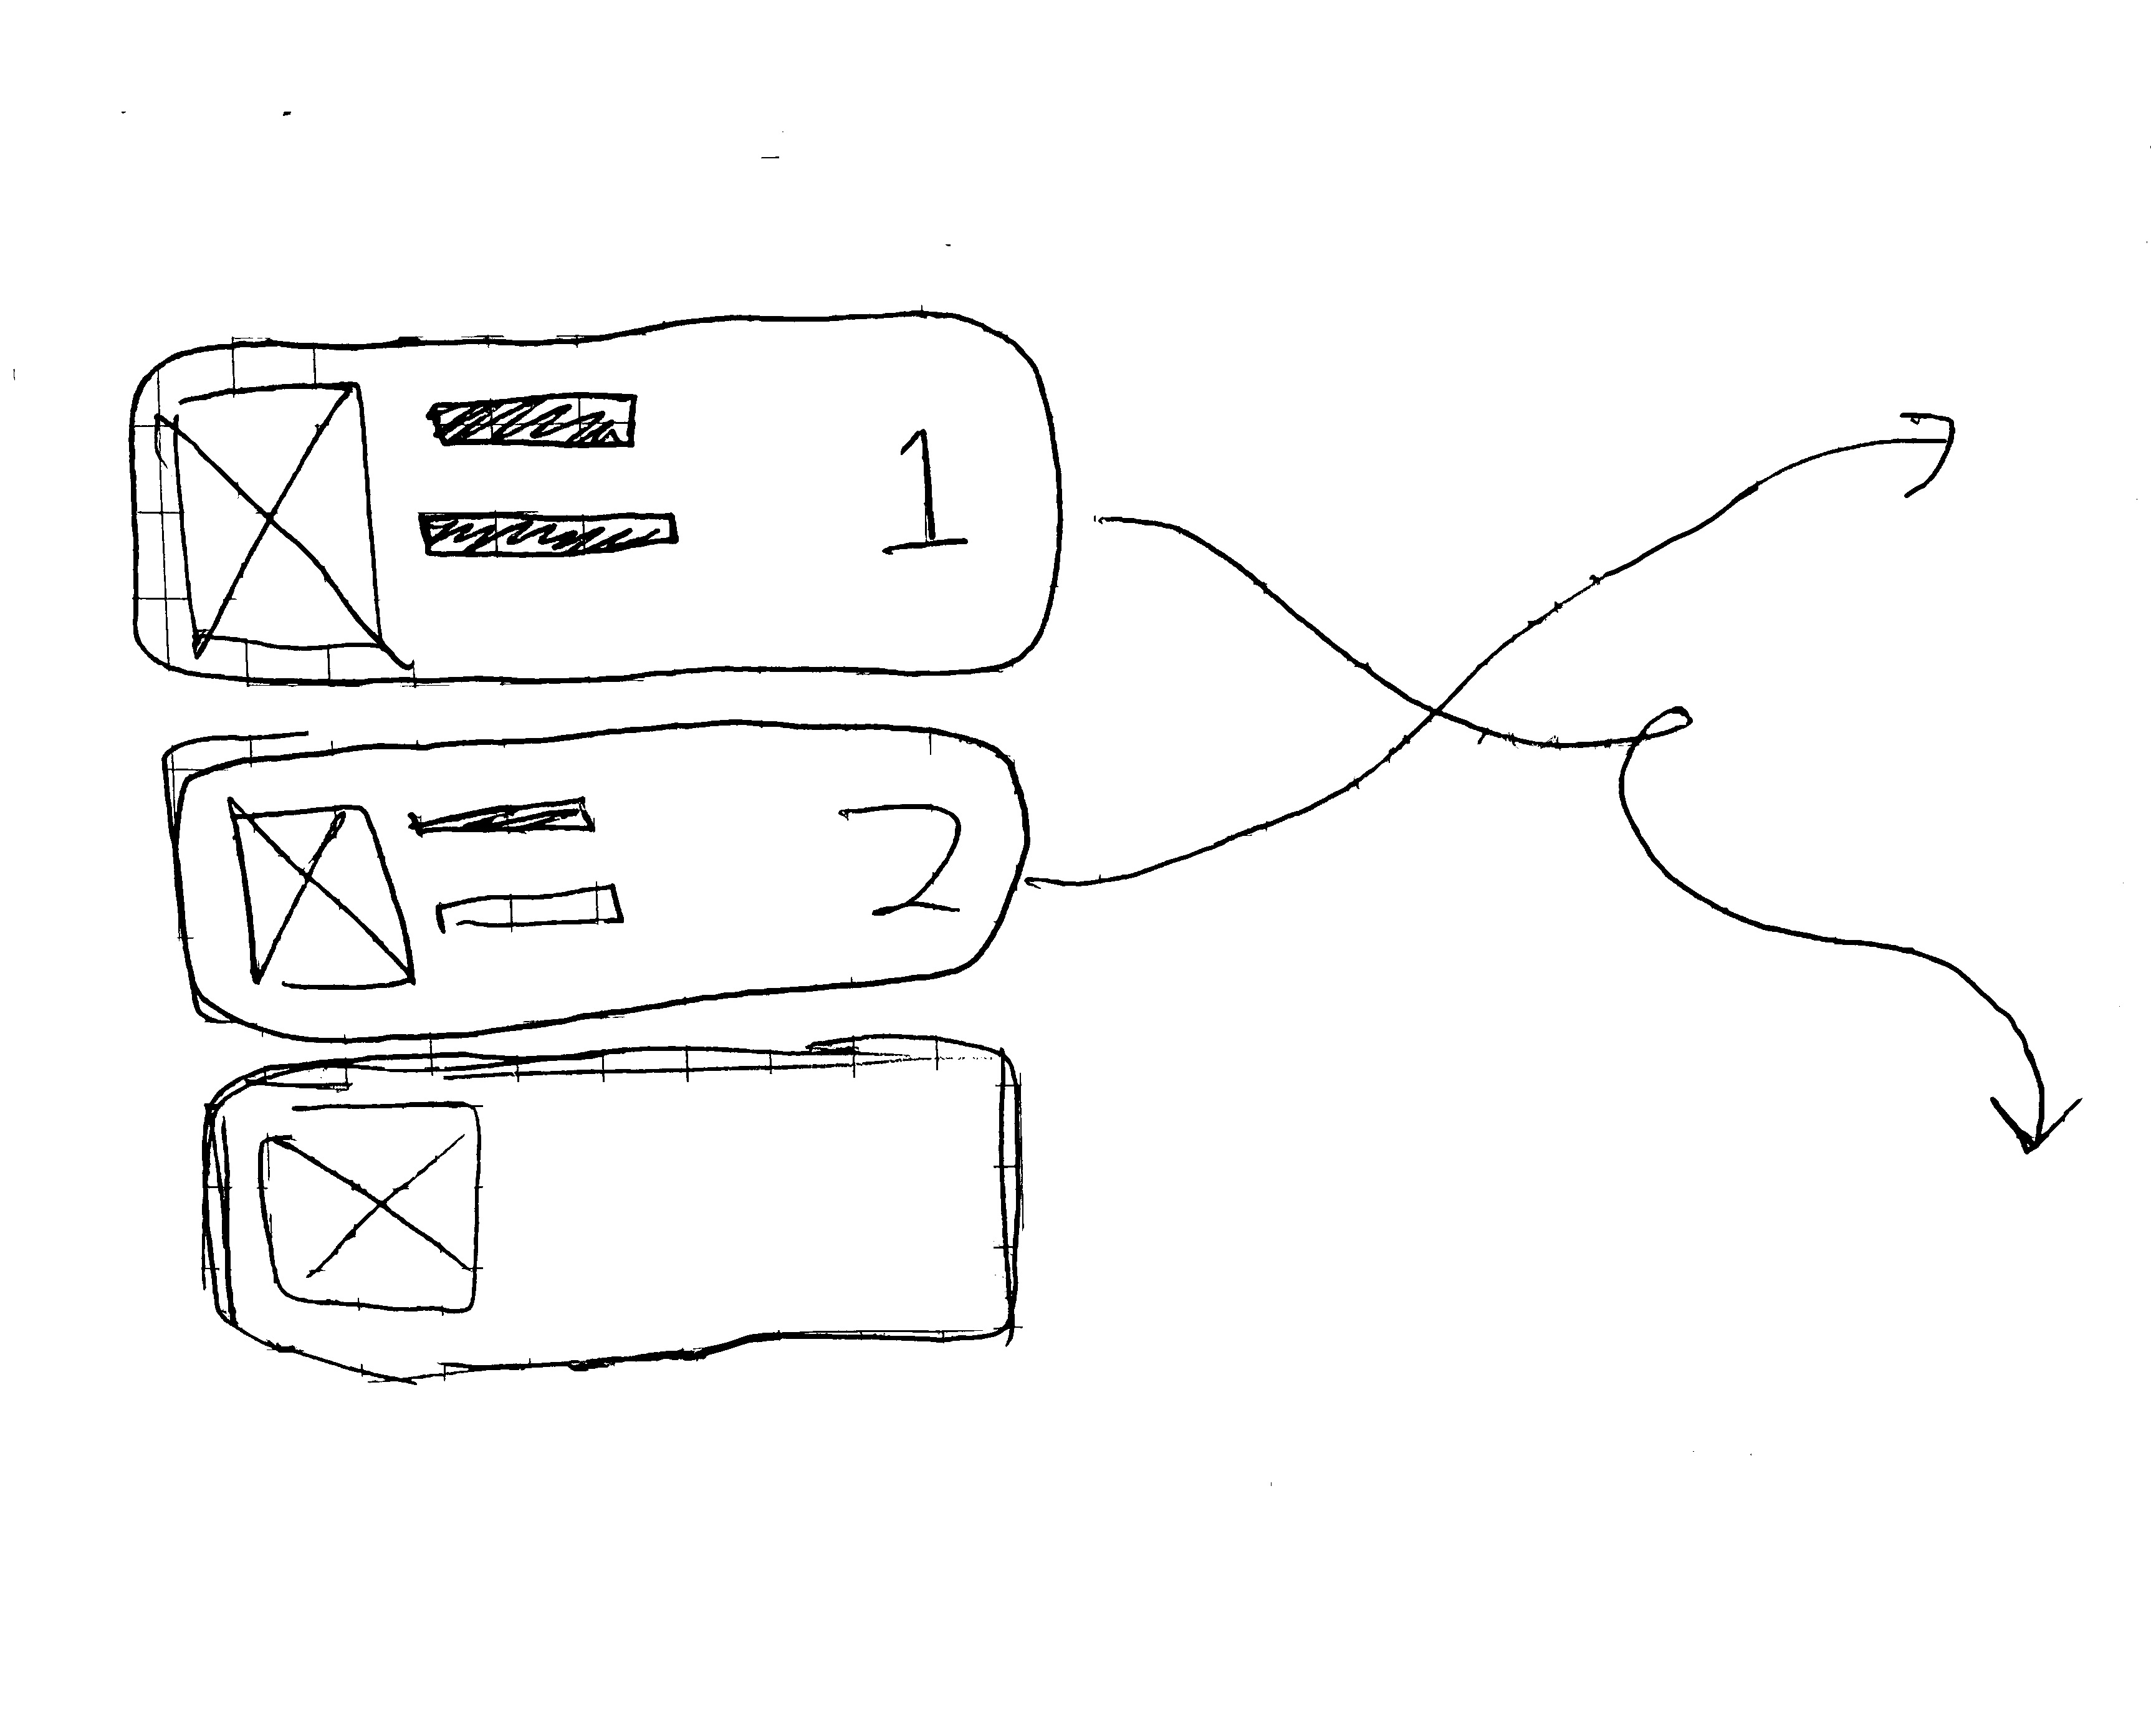 a pencil sketch of UI movement